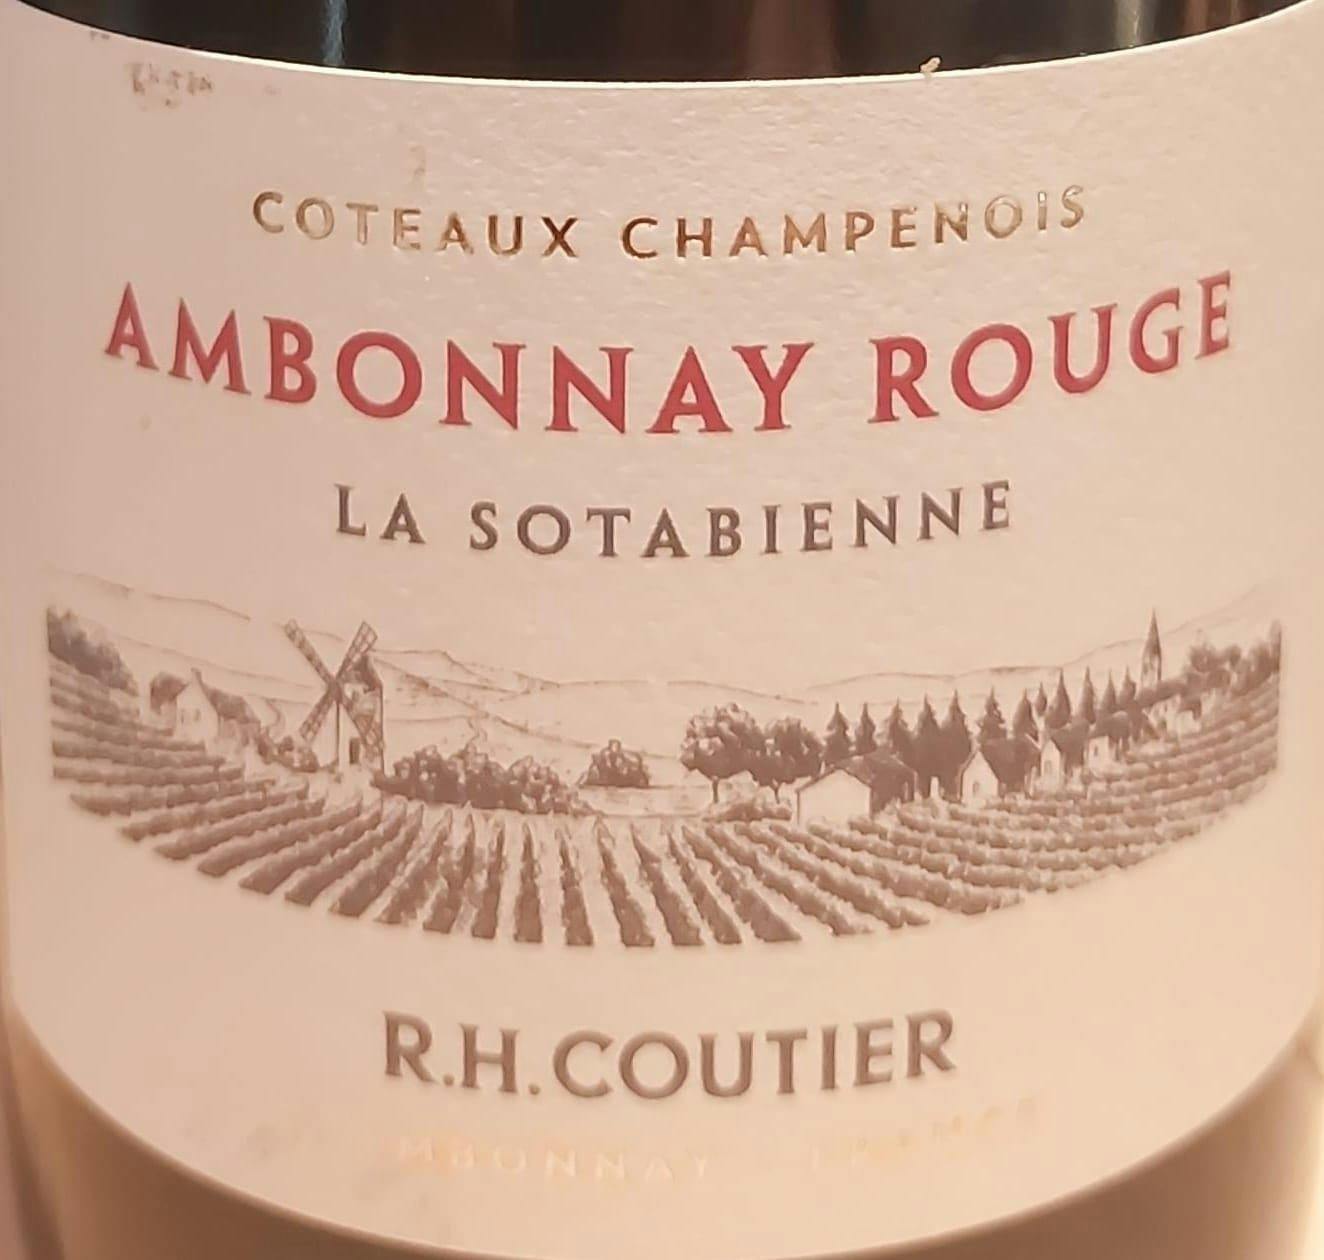 Ambonnay Rouge La Sotabienne 2018 | R. H. Coutier